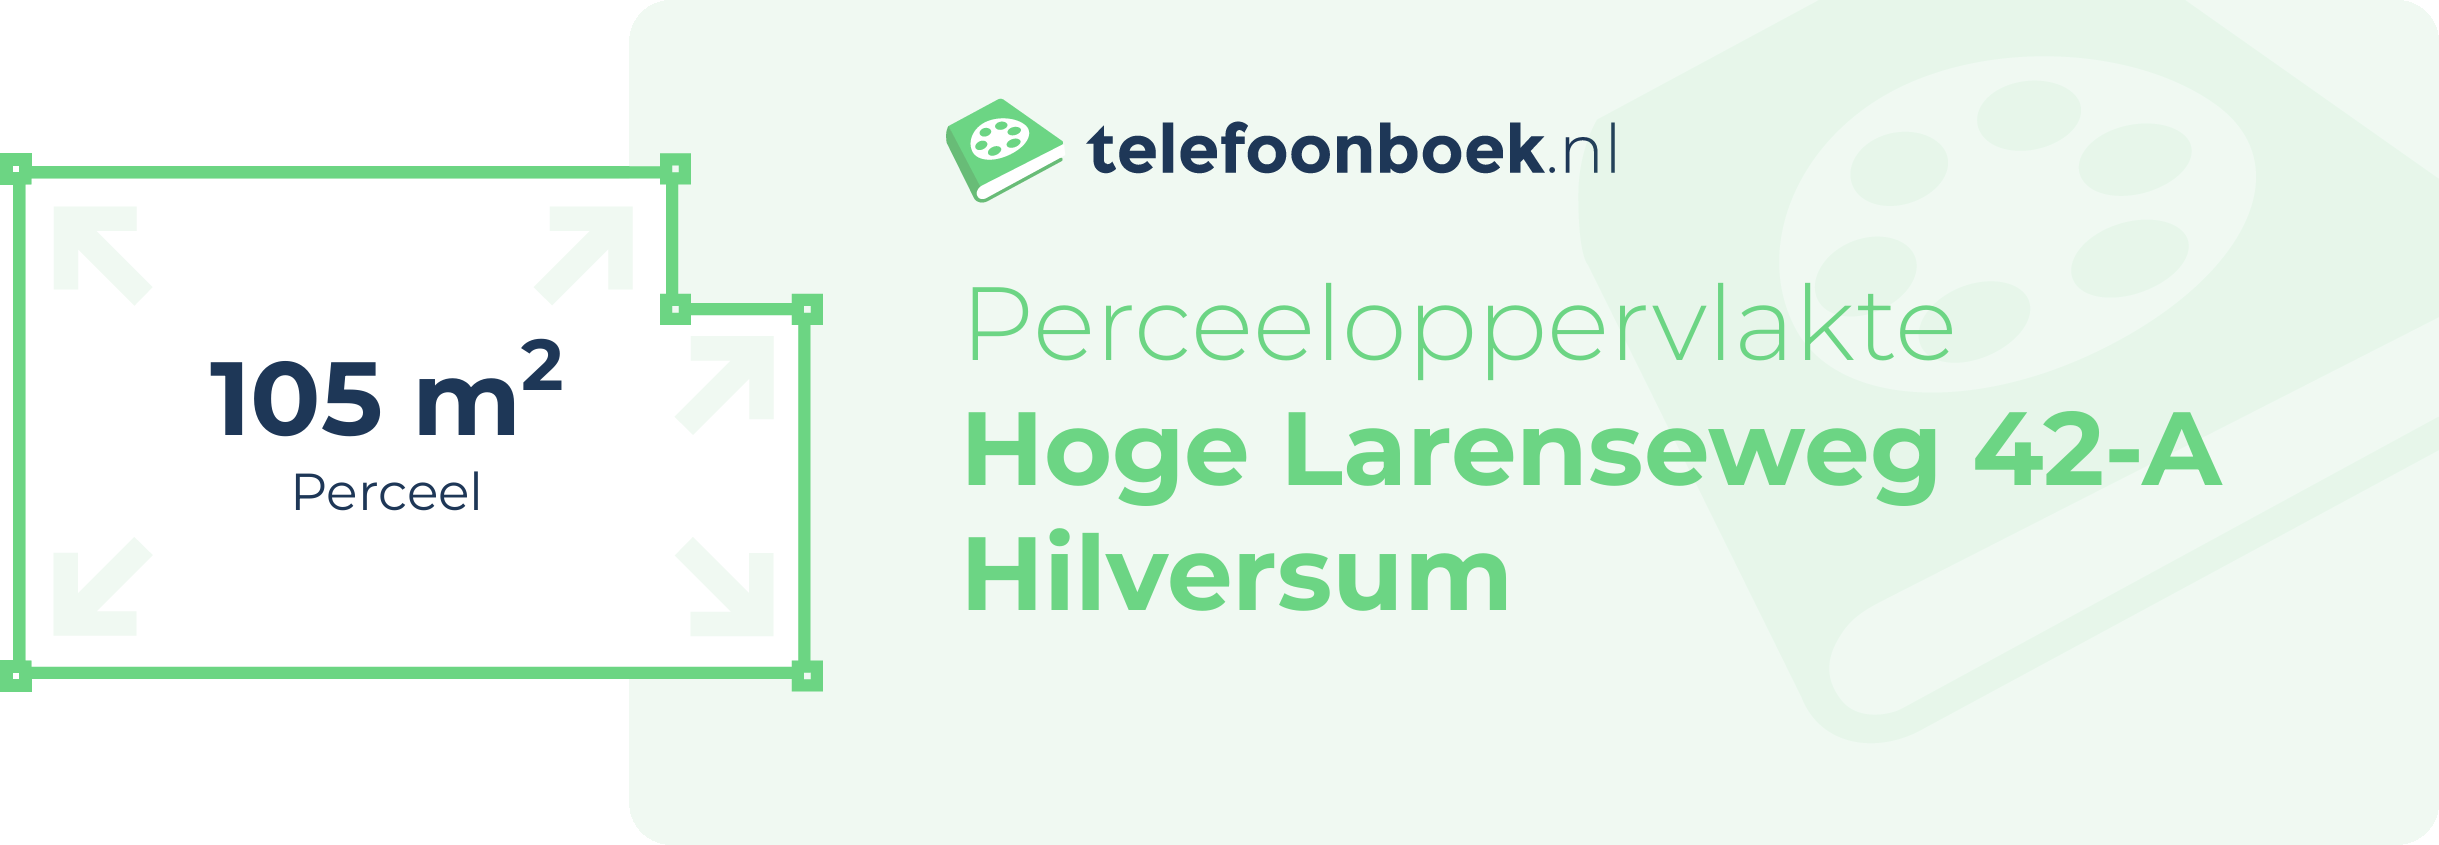 Perceeloppervlakte Hoge Larenseweg 42-A Hilversum